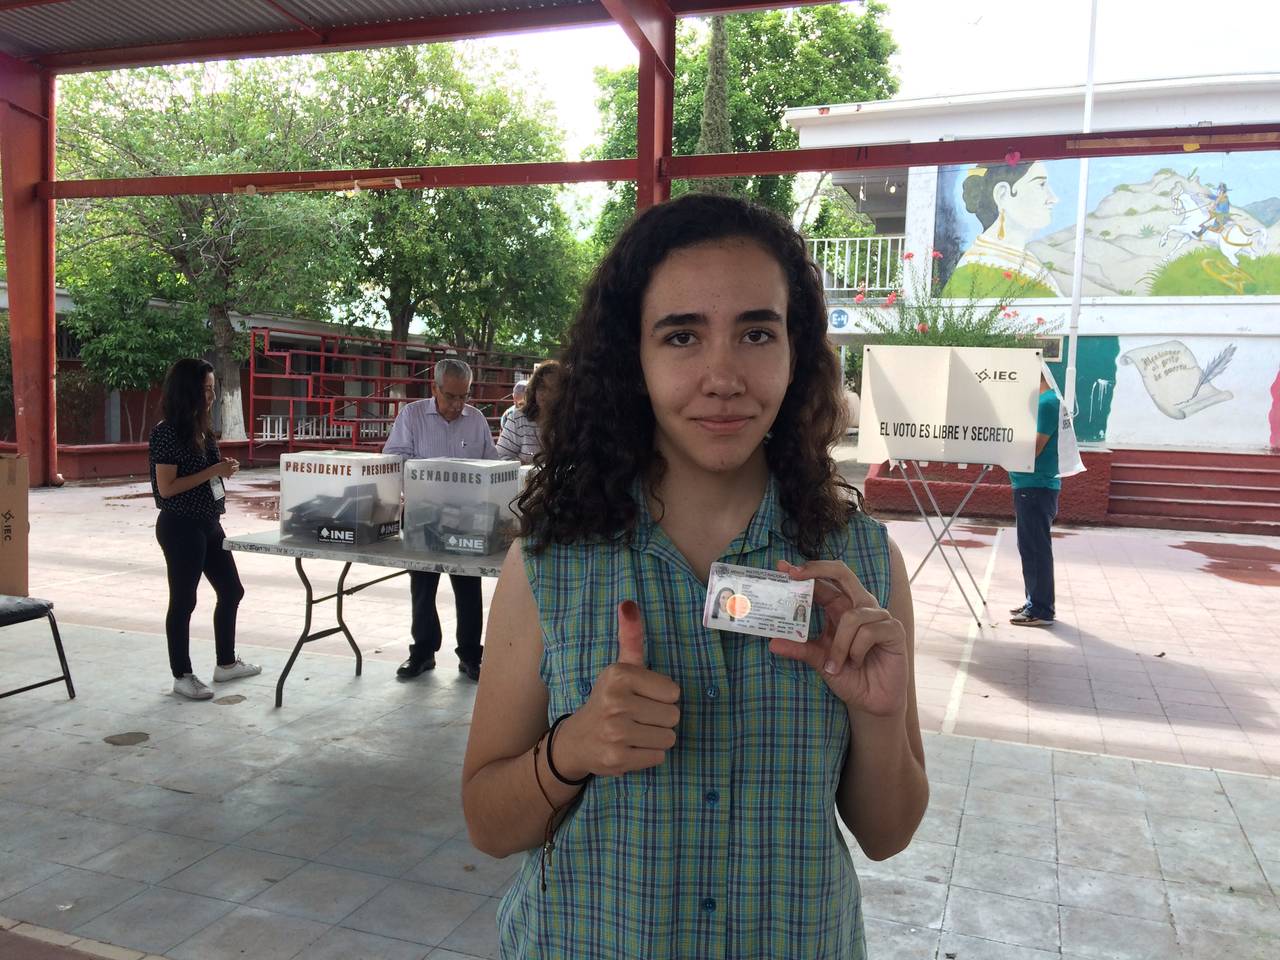 Emocionada. Ana Cristina asegura sentirse feliz de contribuir con el país y participar por primera vez en el proceso electoral. (MARIANA ONOFRE)